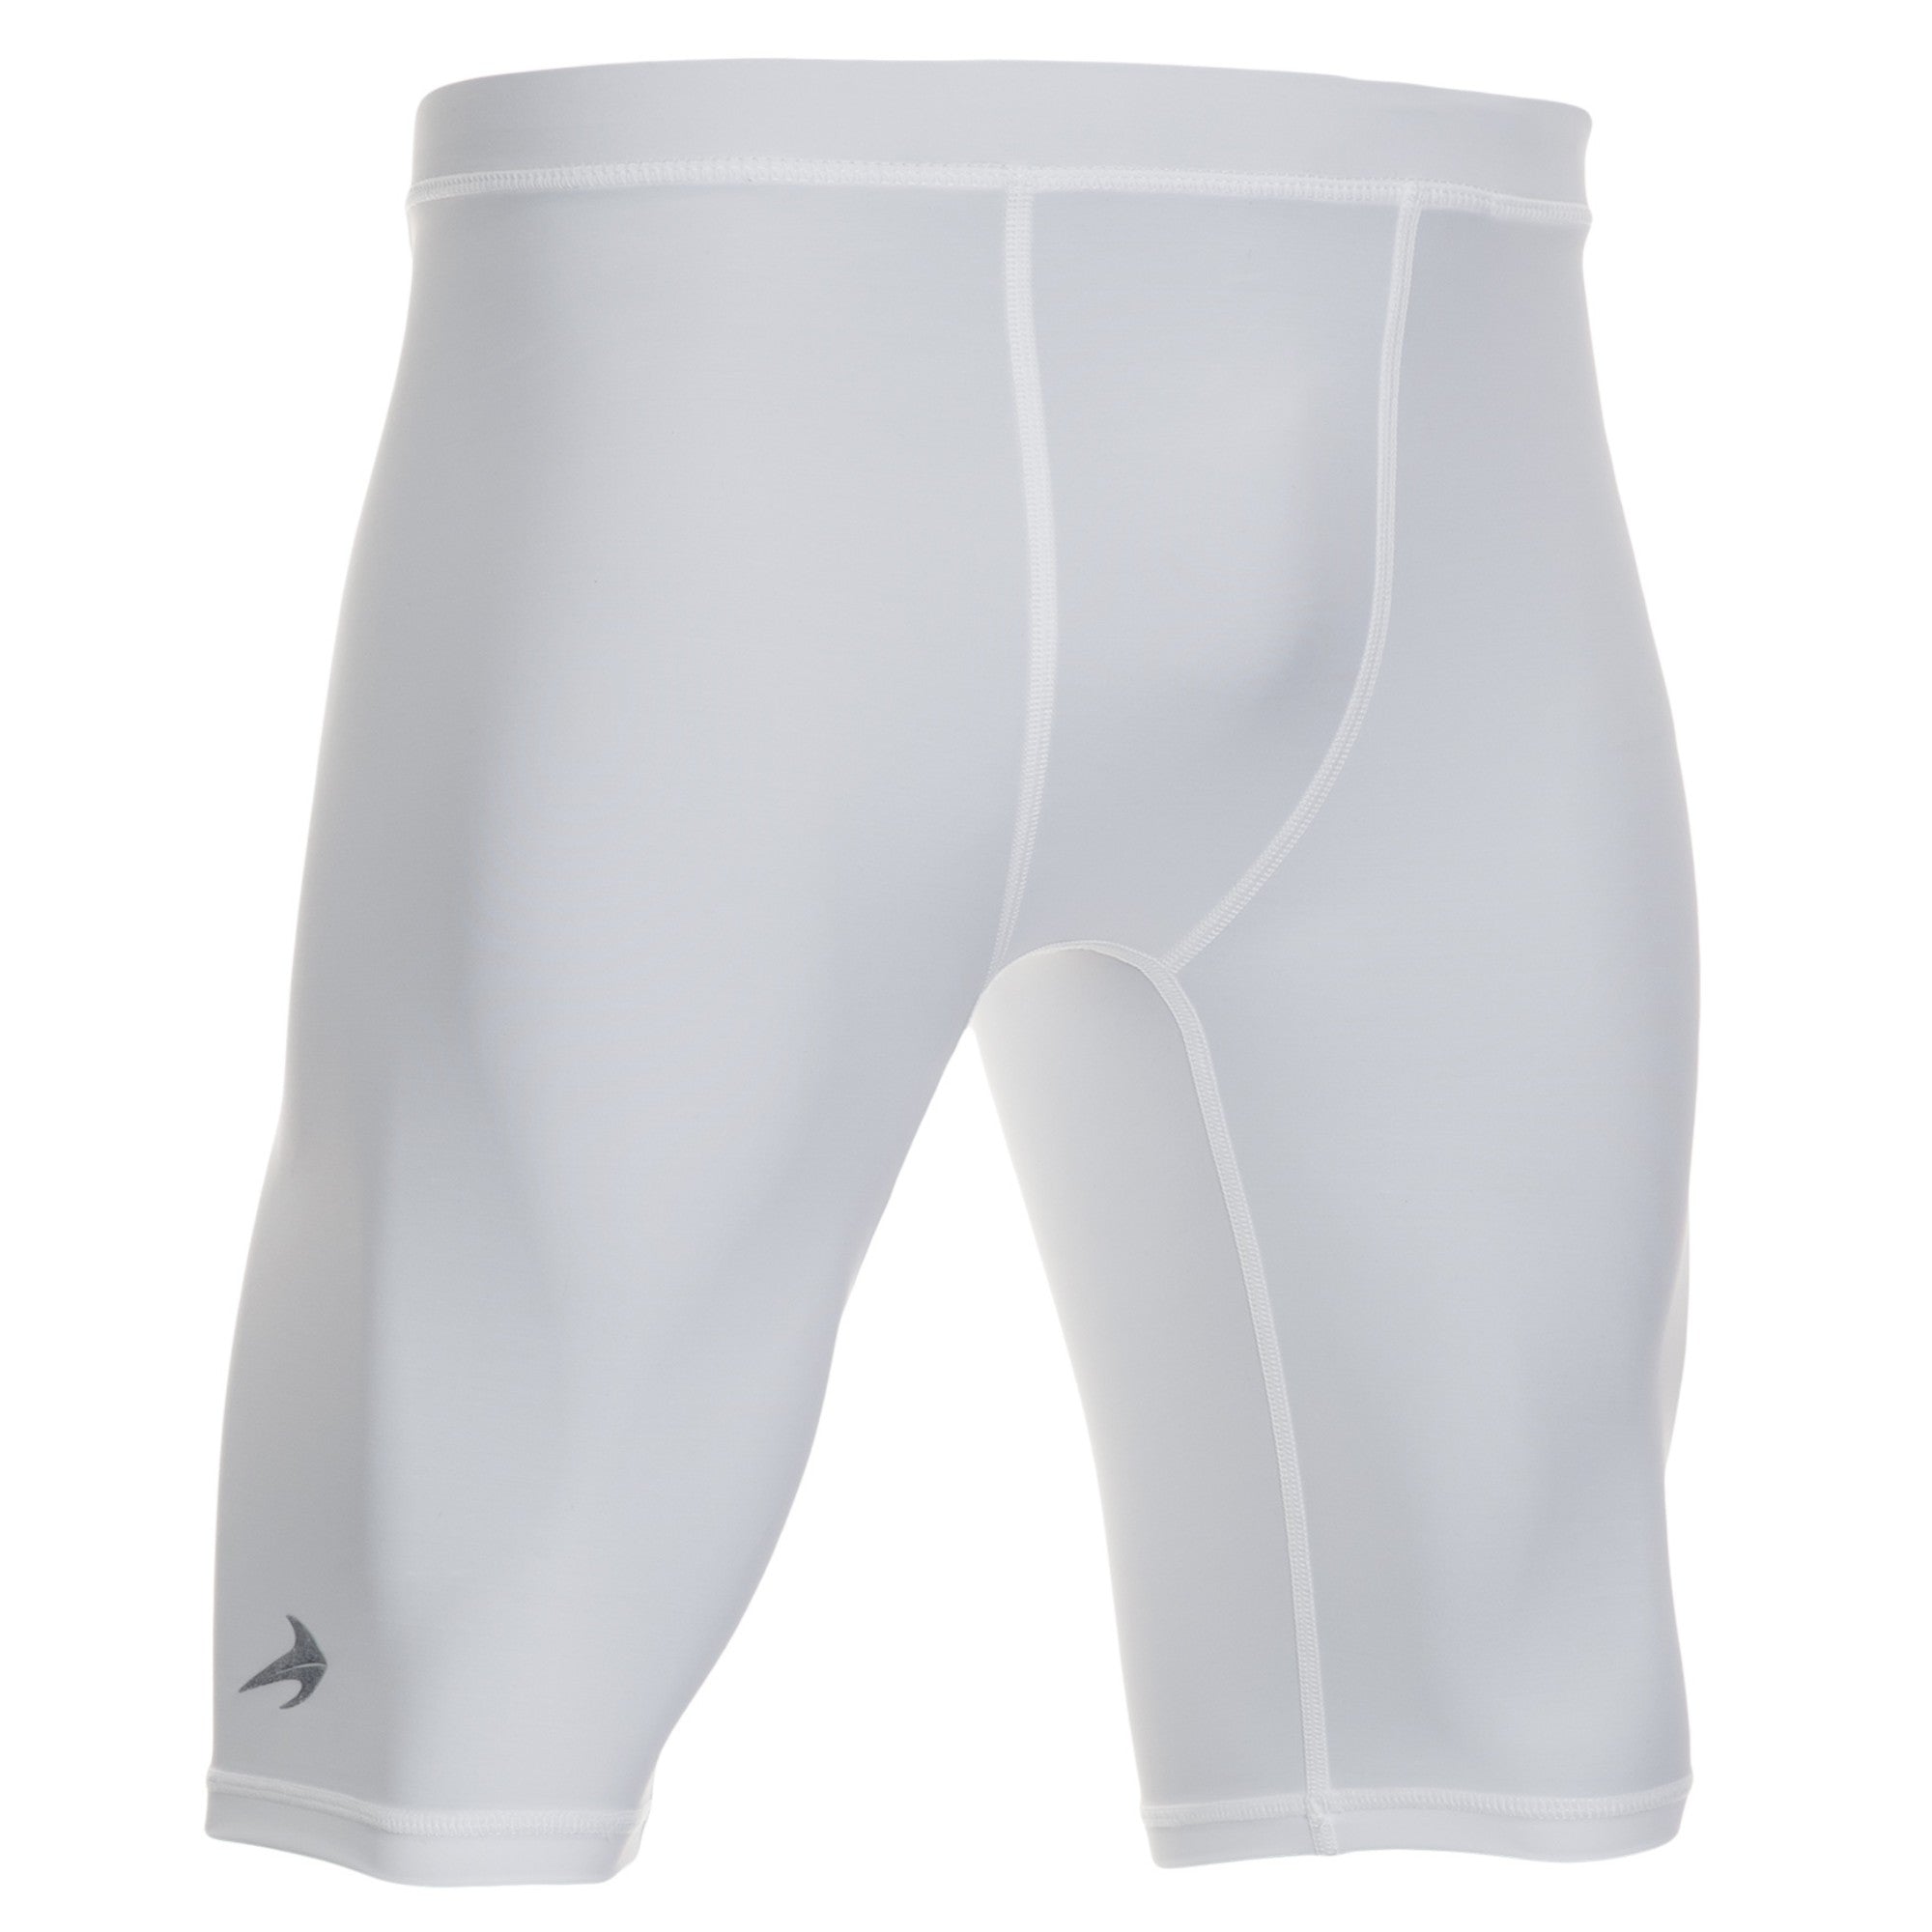 Men's 9" Compression Shorts - White